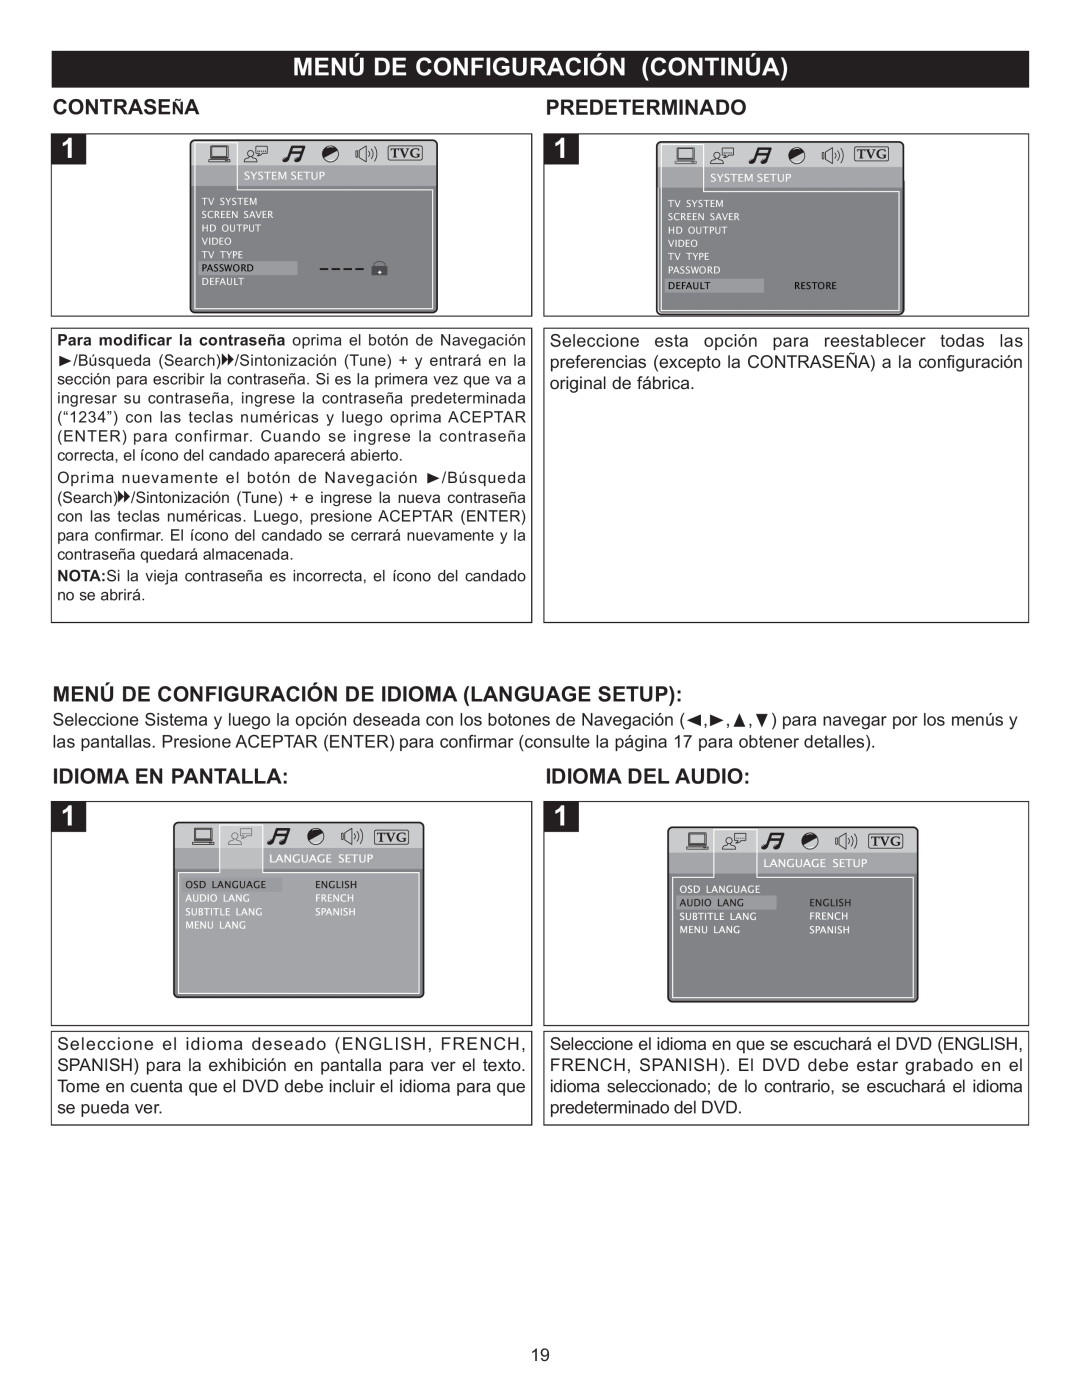 Memorex MIHT5005 manual Contraseña, Predeterminado, Menú De Configuración De Idioma Language Setup, Idioma En Pantalla 